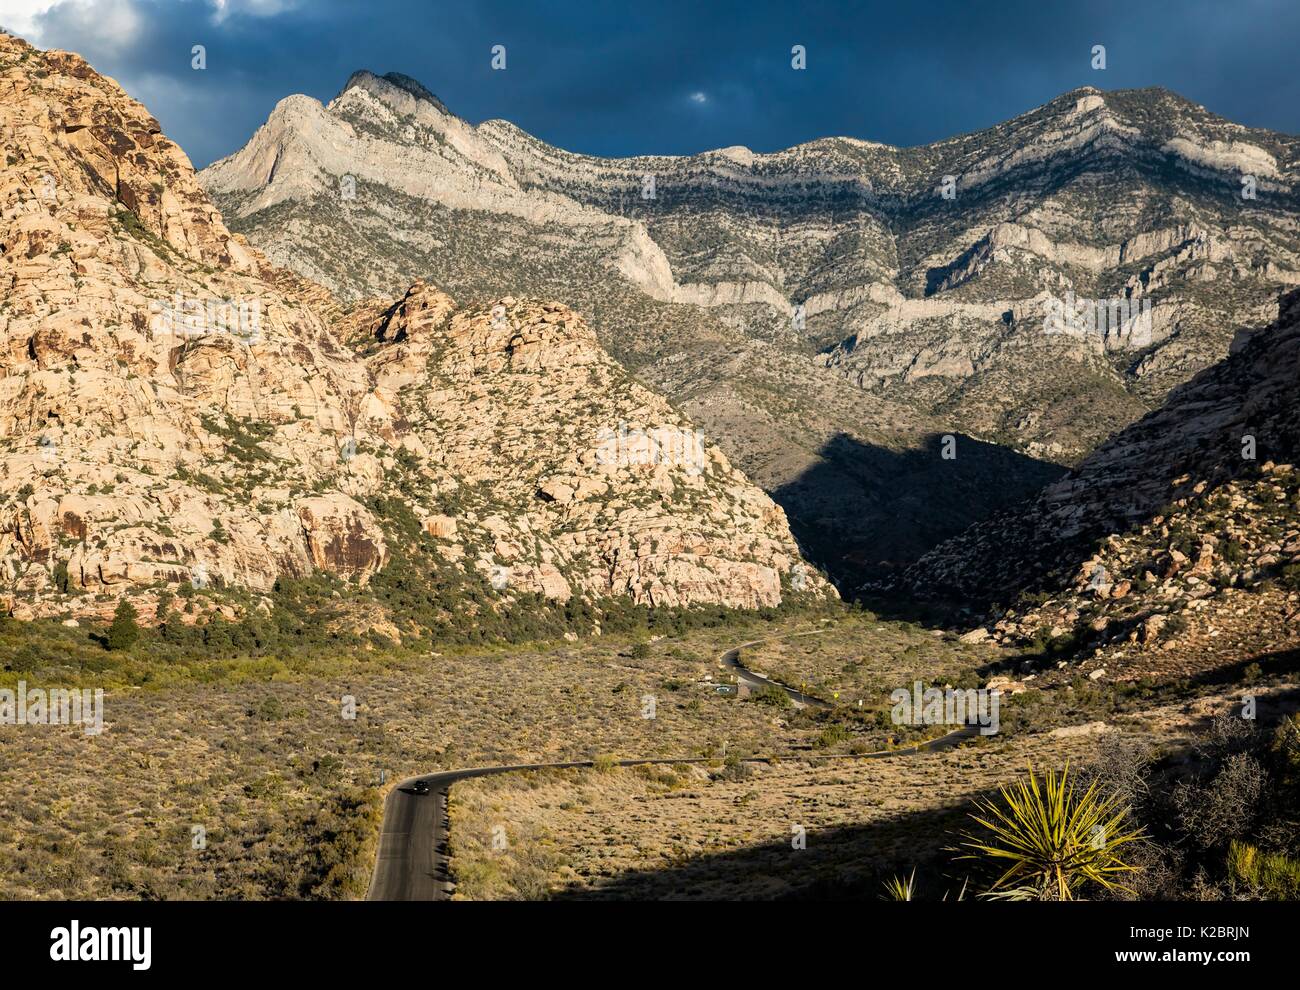 Des canyons, des crêtes et des pics de montagne constituent la La Madre Mountain Wilderness dans le Red Rock Canyon National Conservation Area, 29 septembre 2016 près de Las Vegas, Nevada. Banque D'Images